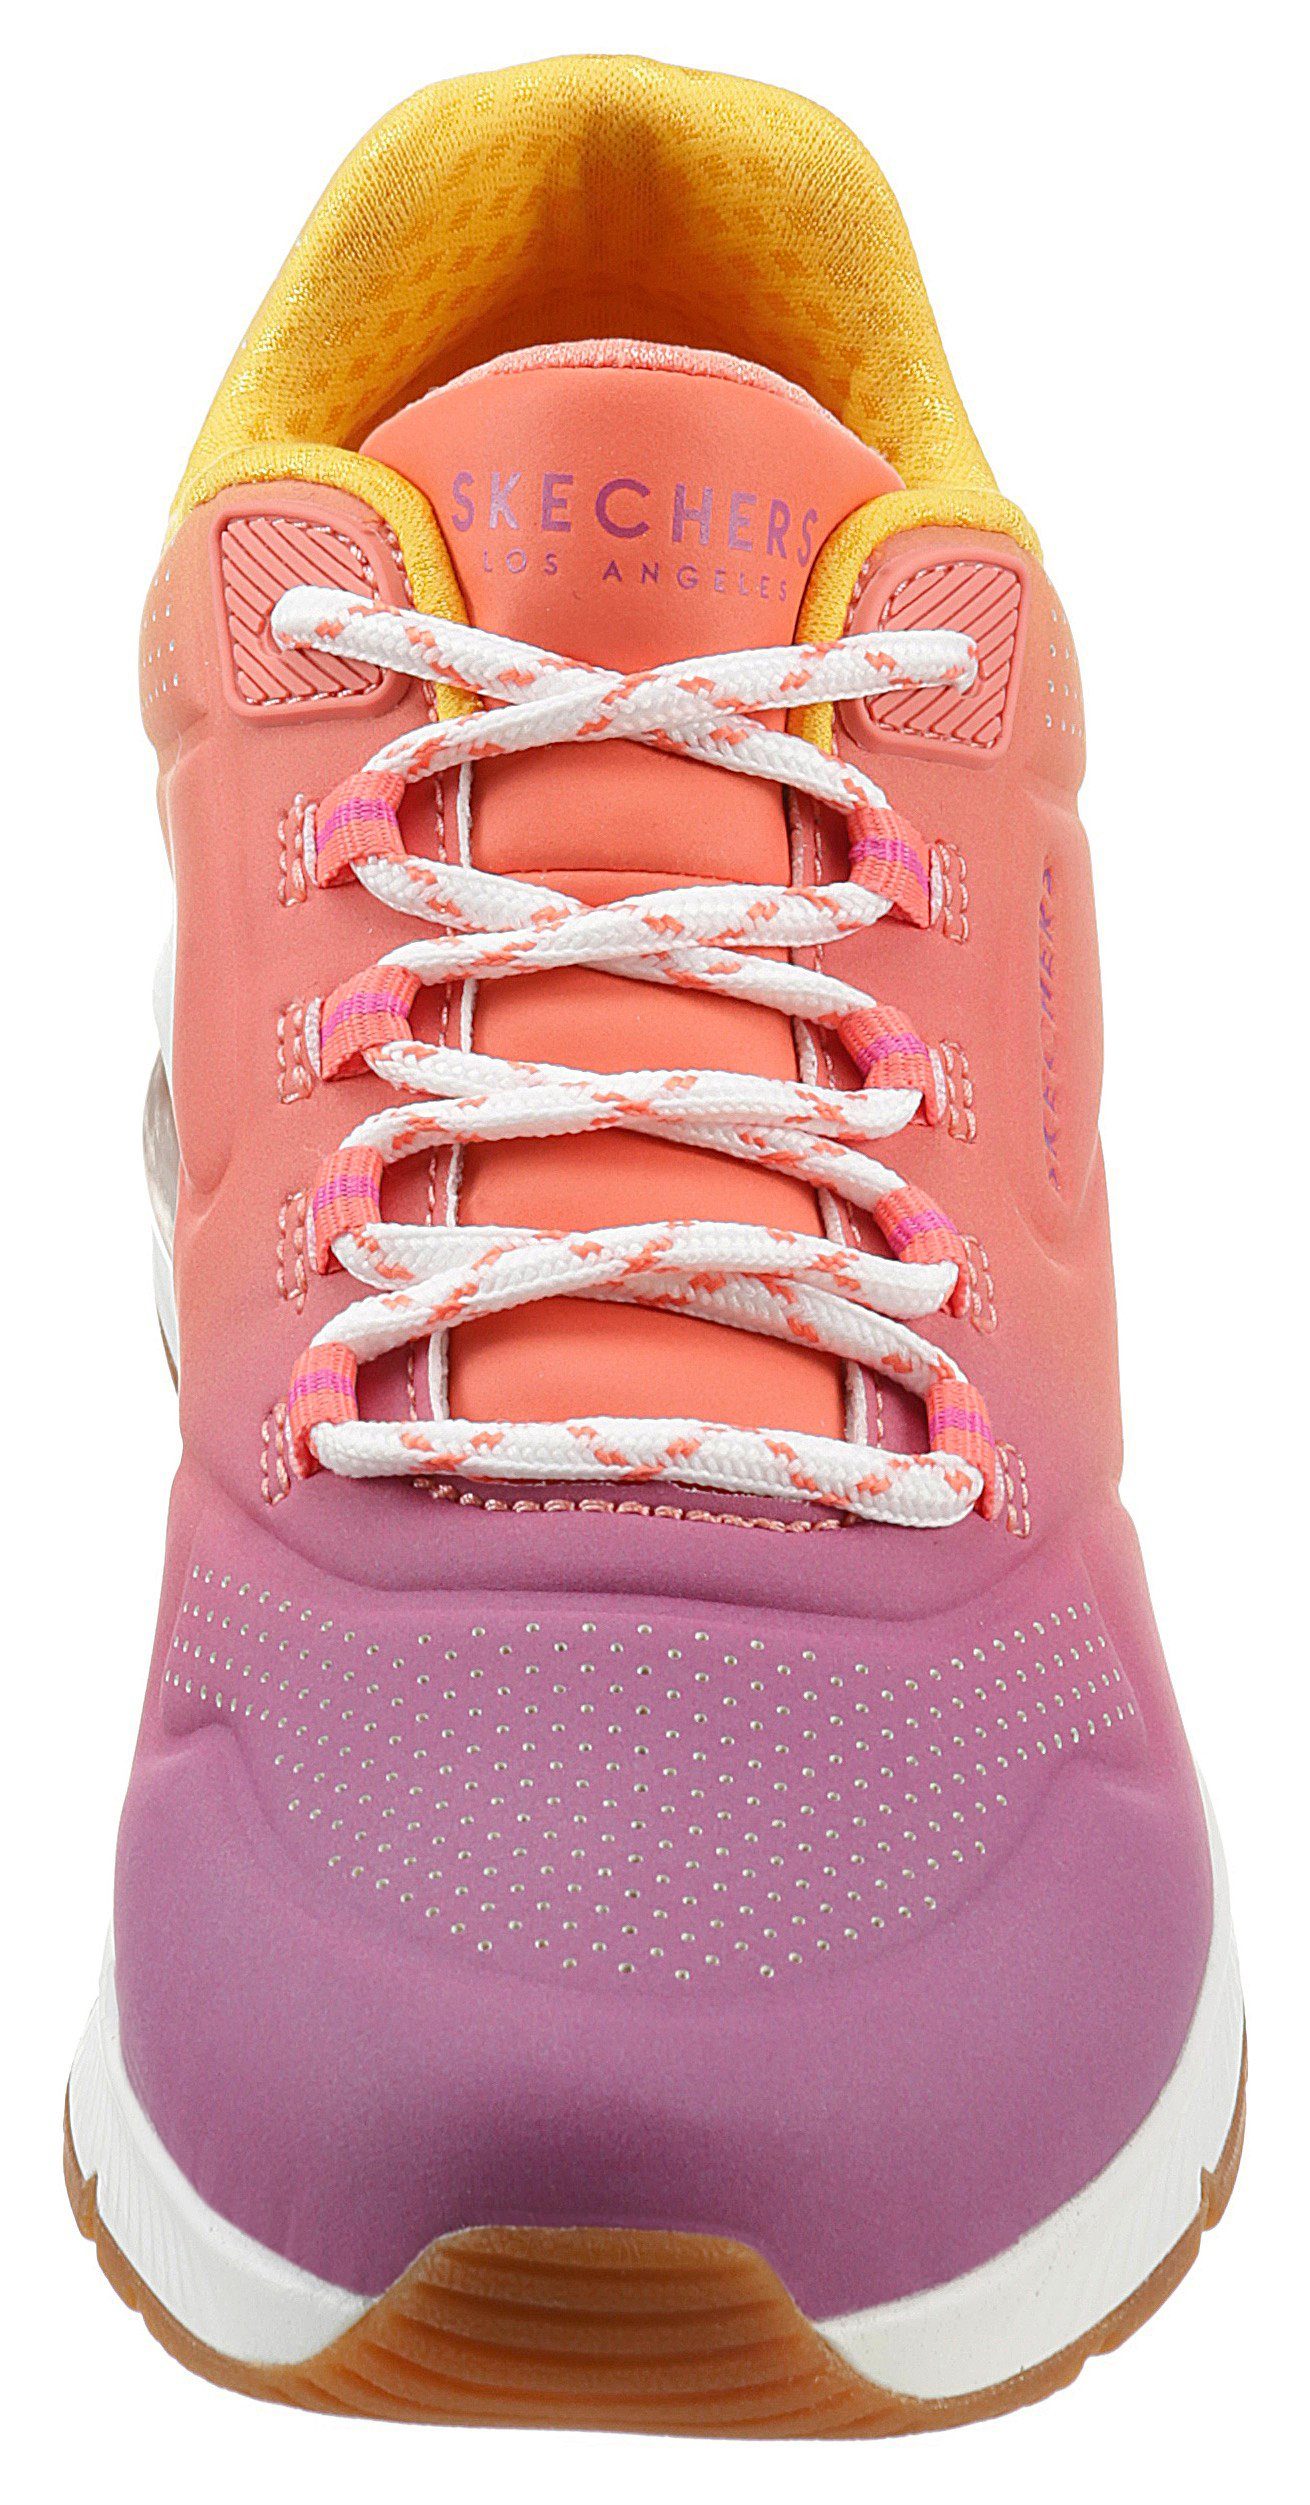 Farbkombi leuchtender OMBRE pink-kombiniert Skechers Sneaker AWAY in UNO 2